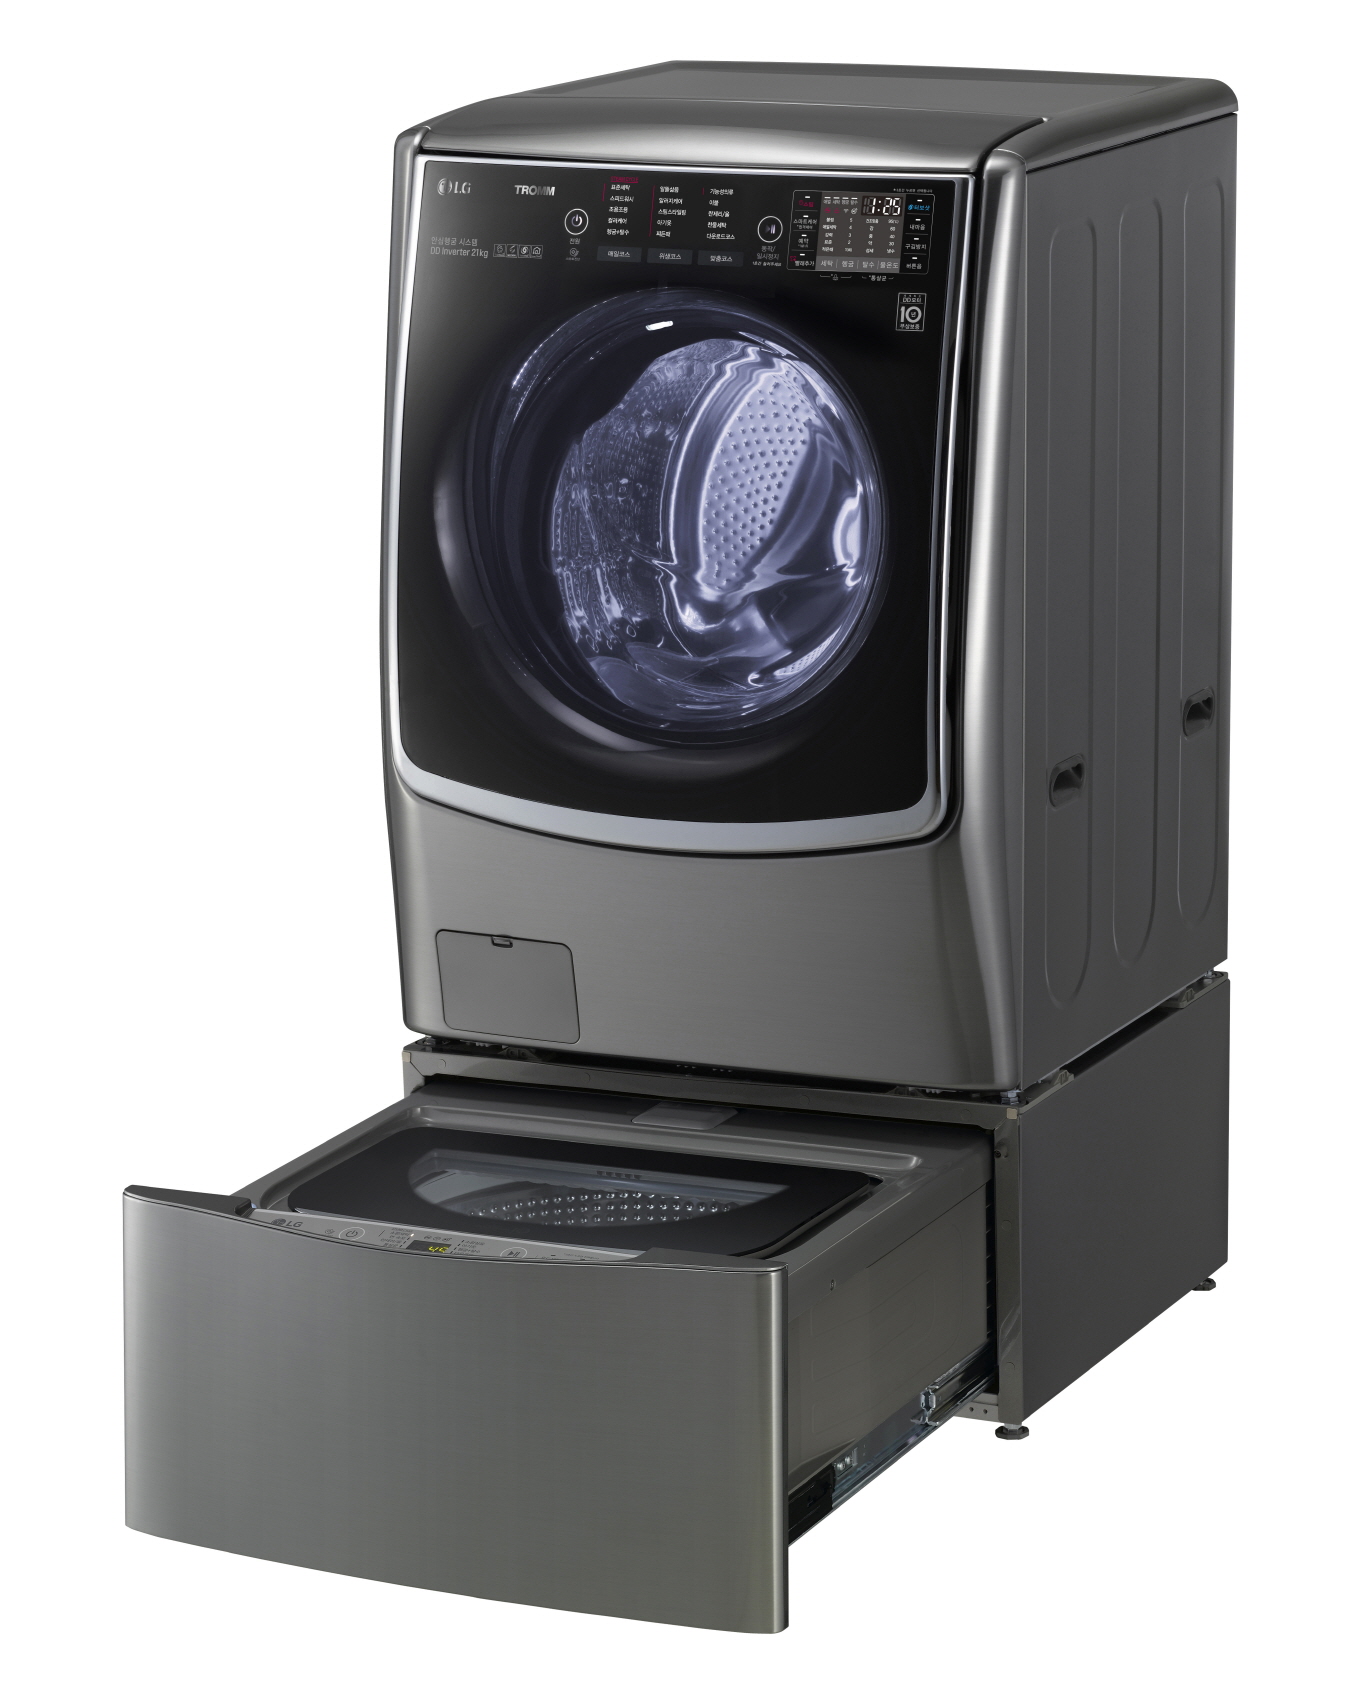 2015년 LG전자가 세계 최초로 드럼세탁기 하단에 통돌이세탁기를 결합해 새로운 세탁문화를 만든 '트롬 트윈워시'